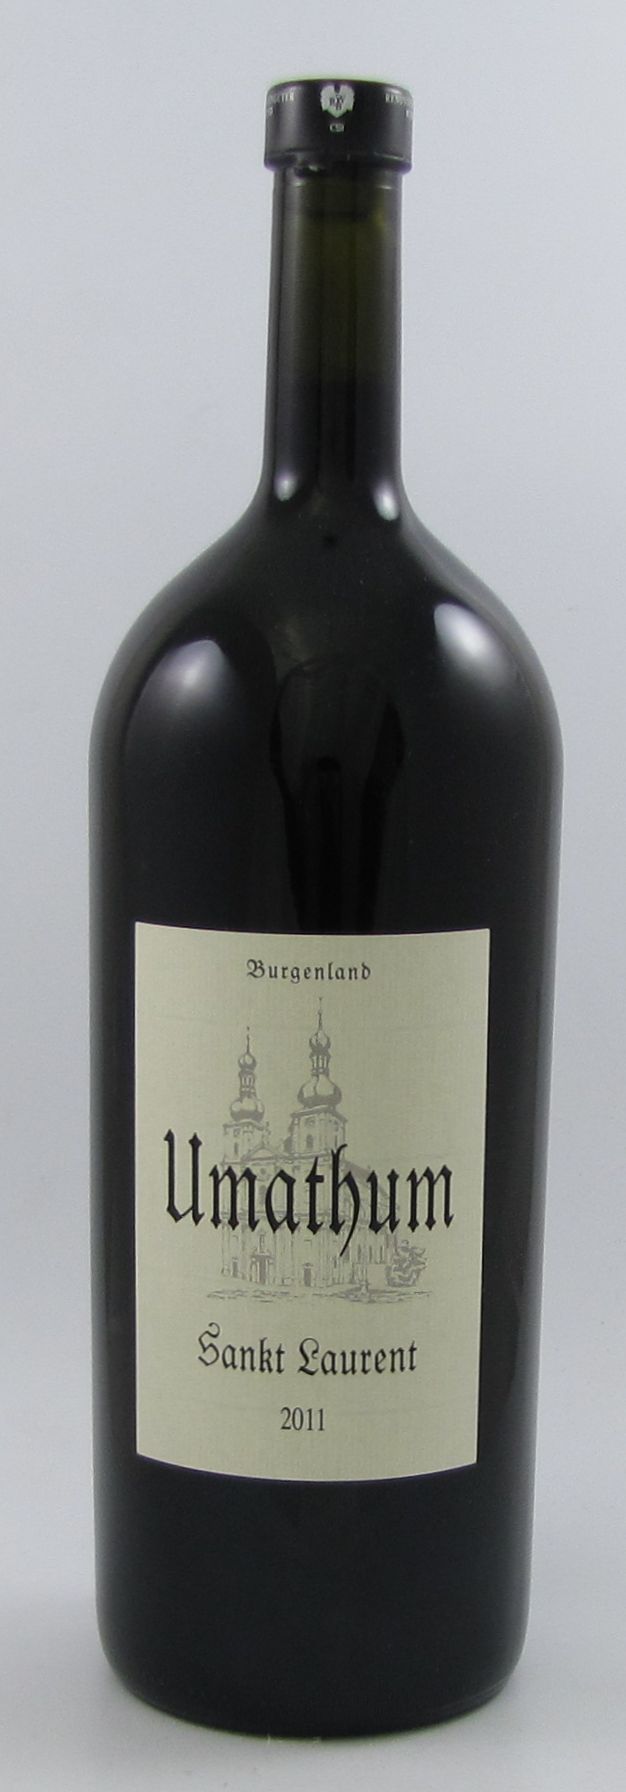 1,5 L Magnum Sankt Laurent 2011 Umathum